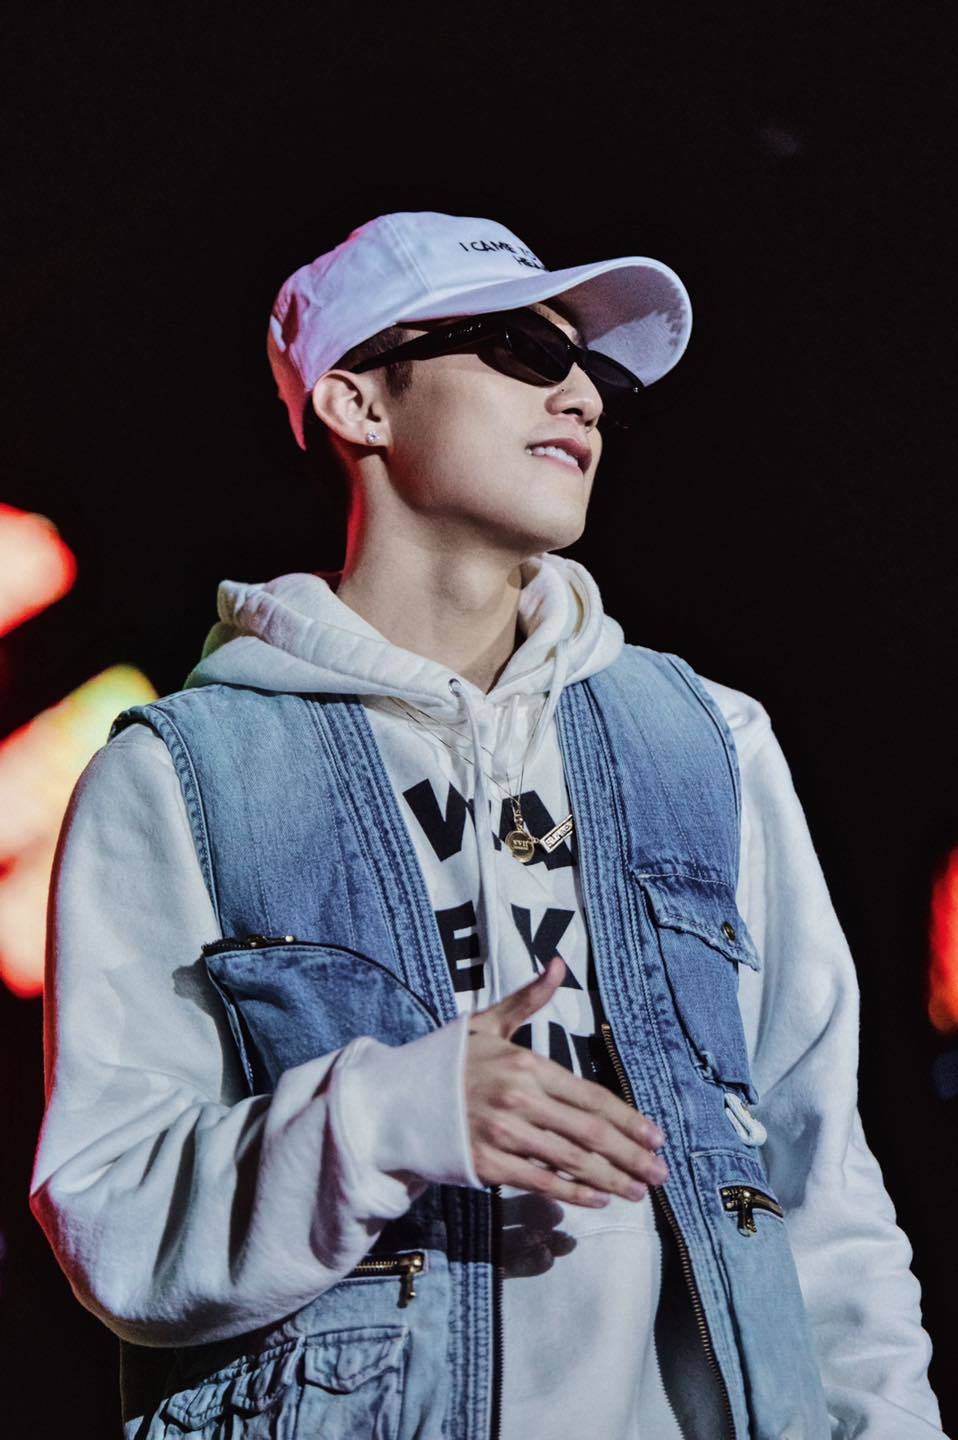  
Lúc đầu ca sĩ khoác chiếc áo jean phía ngoài, mang đến hình ảnh "thanh niên thành phố", anh phối áo hoodie cùng nón trắng và mắt kính đen.(Ảnh: FBNV)